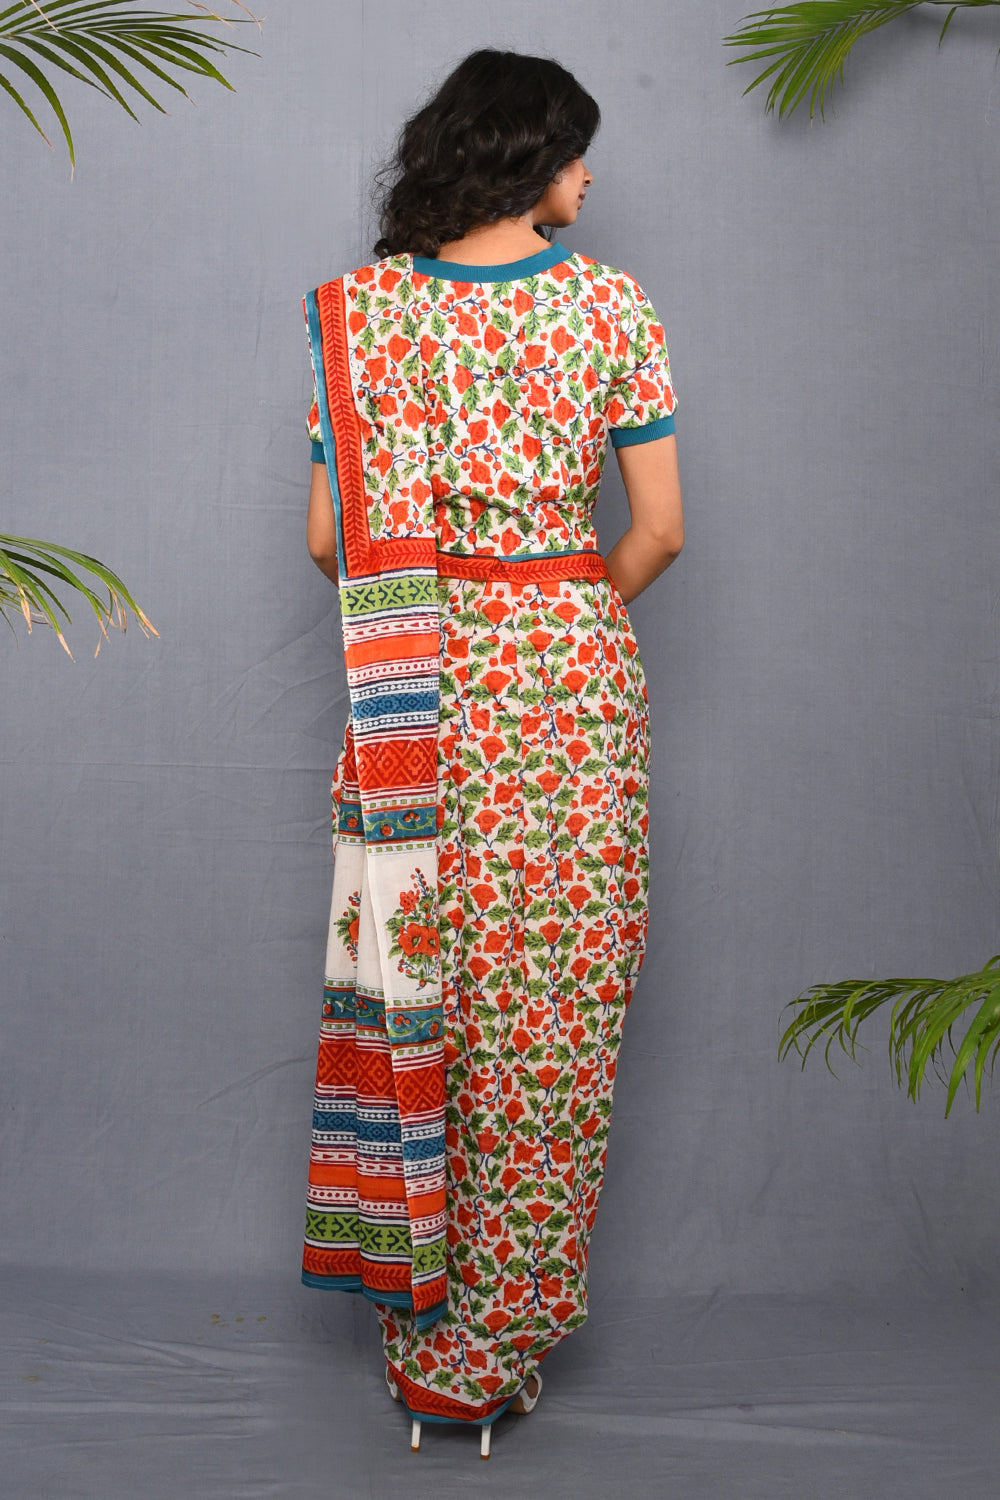 Block Printed T-shirt Saree Dress as seen on Aahana Kumra